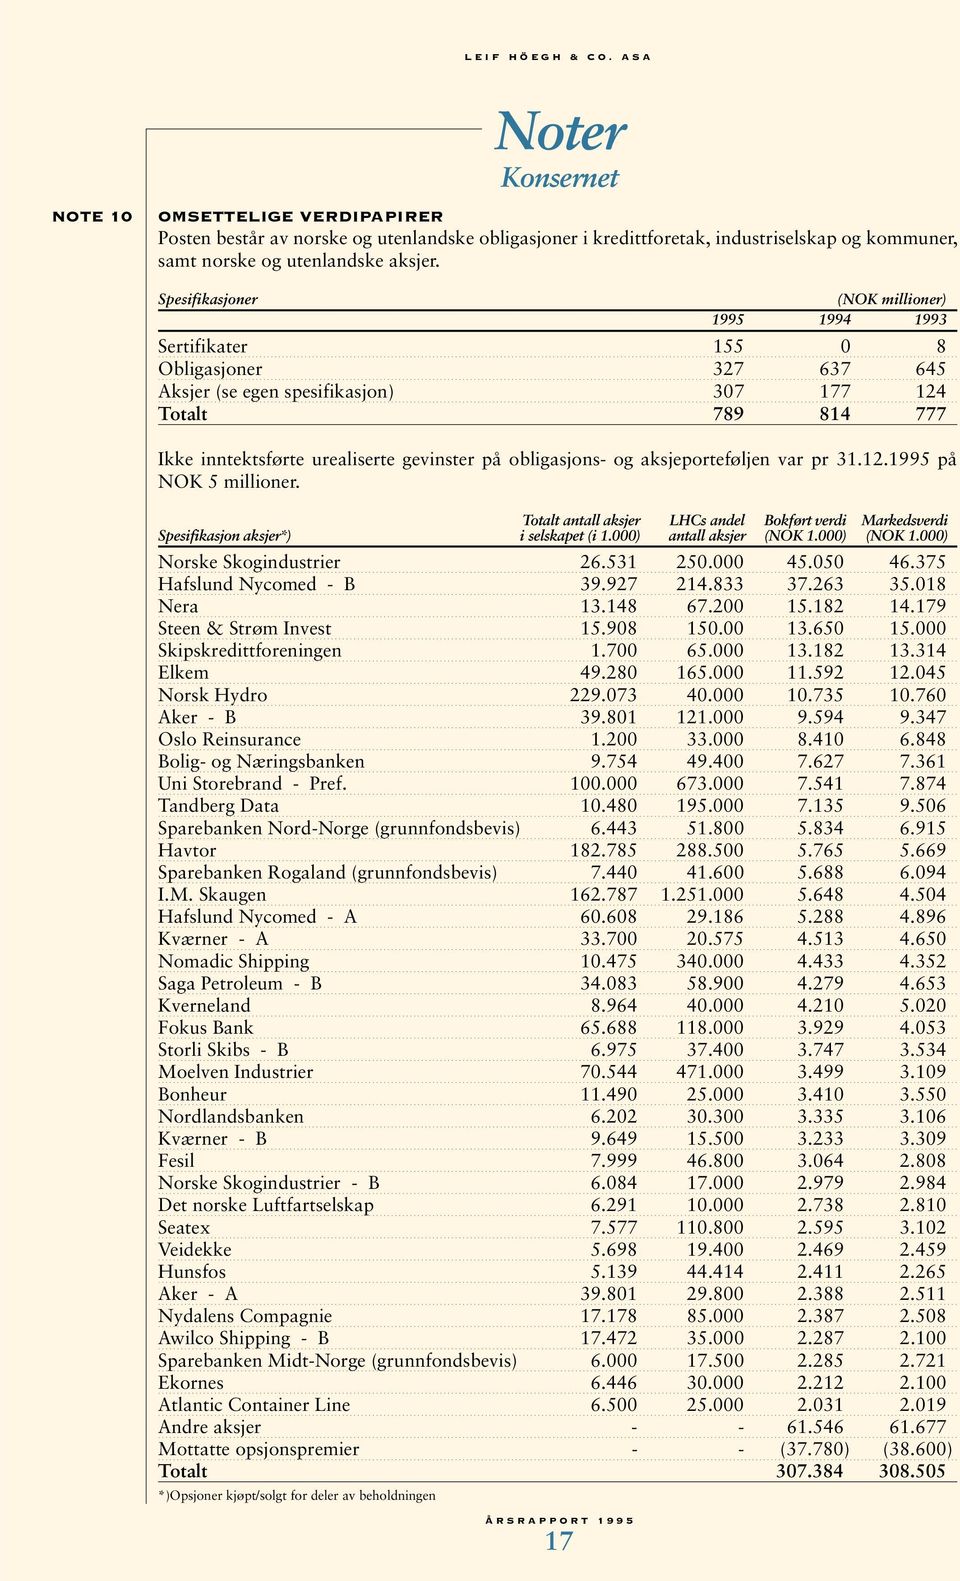 på obligasjons- og aksjeporteføljen var pr 31.12.1995 på NOK 5 millioner. Totalt antall aksjer LHCs andel Bokført verdi Markedsverdi Spesifikasjon aksjer*) i selskapet (i 1.000) antall aksjer (NOK 1.